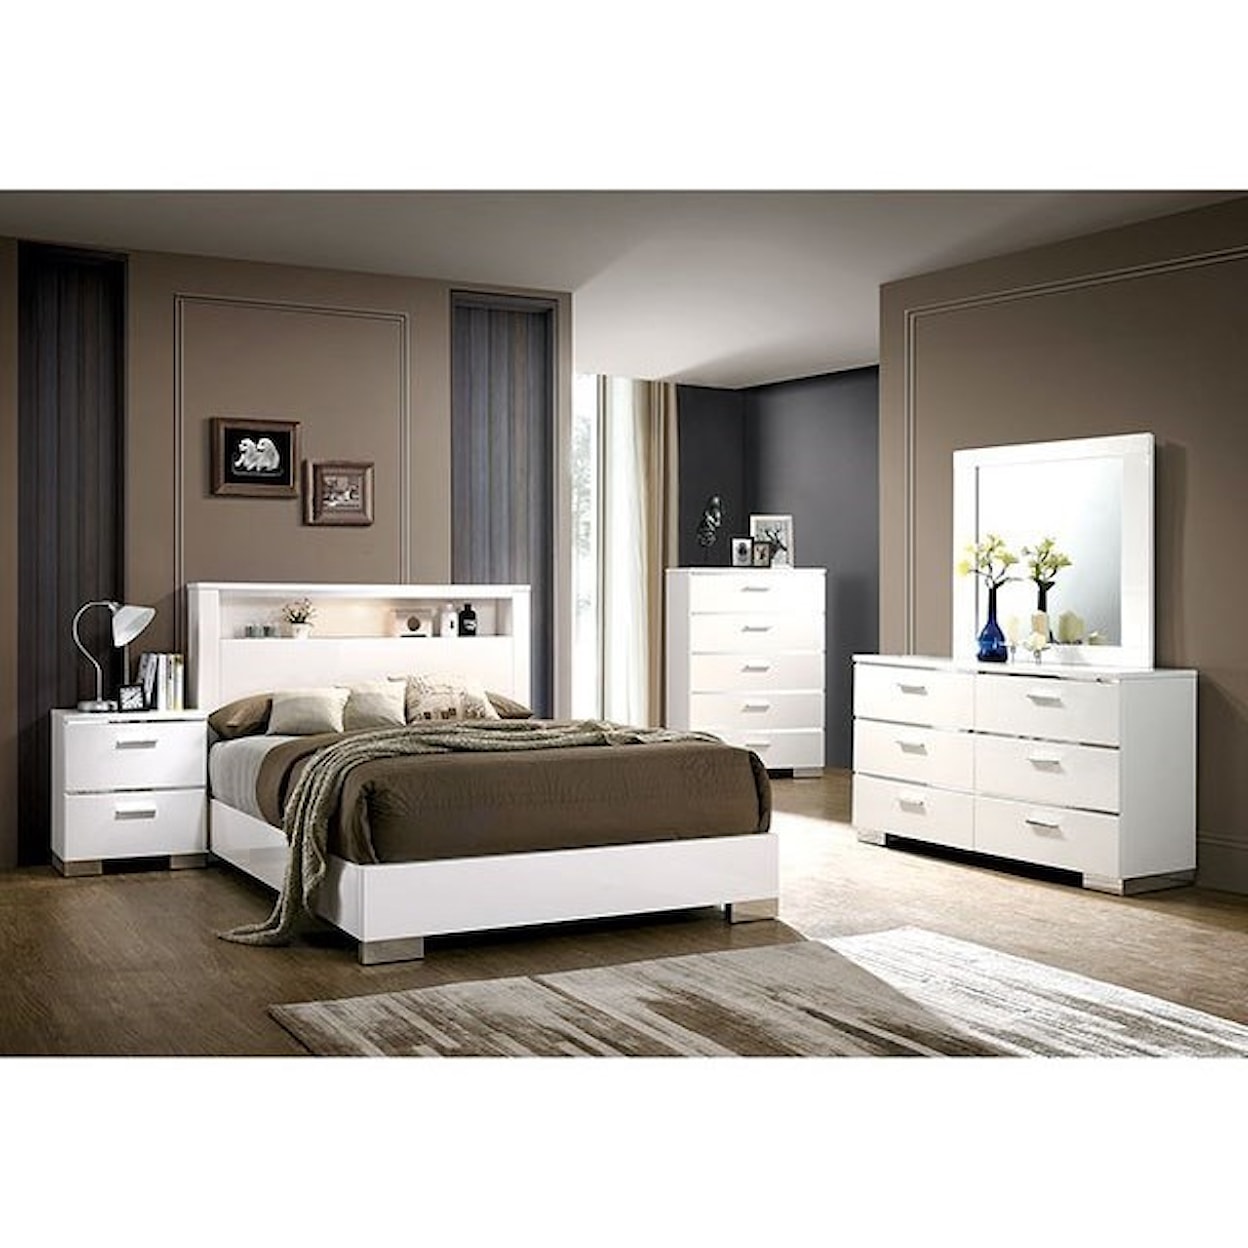 Furniture of America Malte Queen Bedroom Group